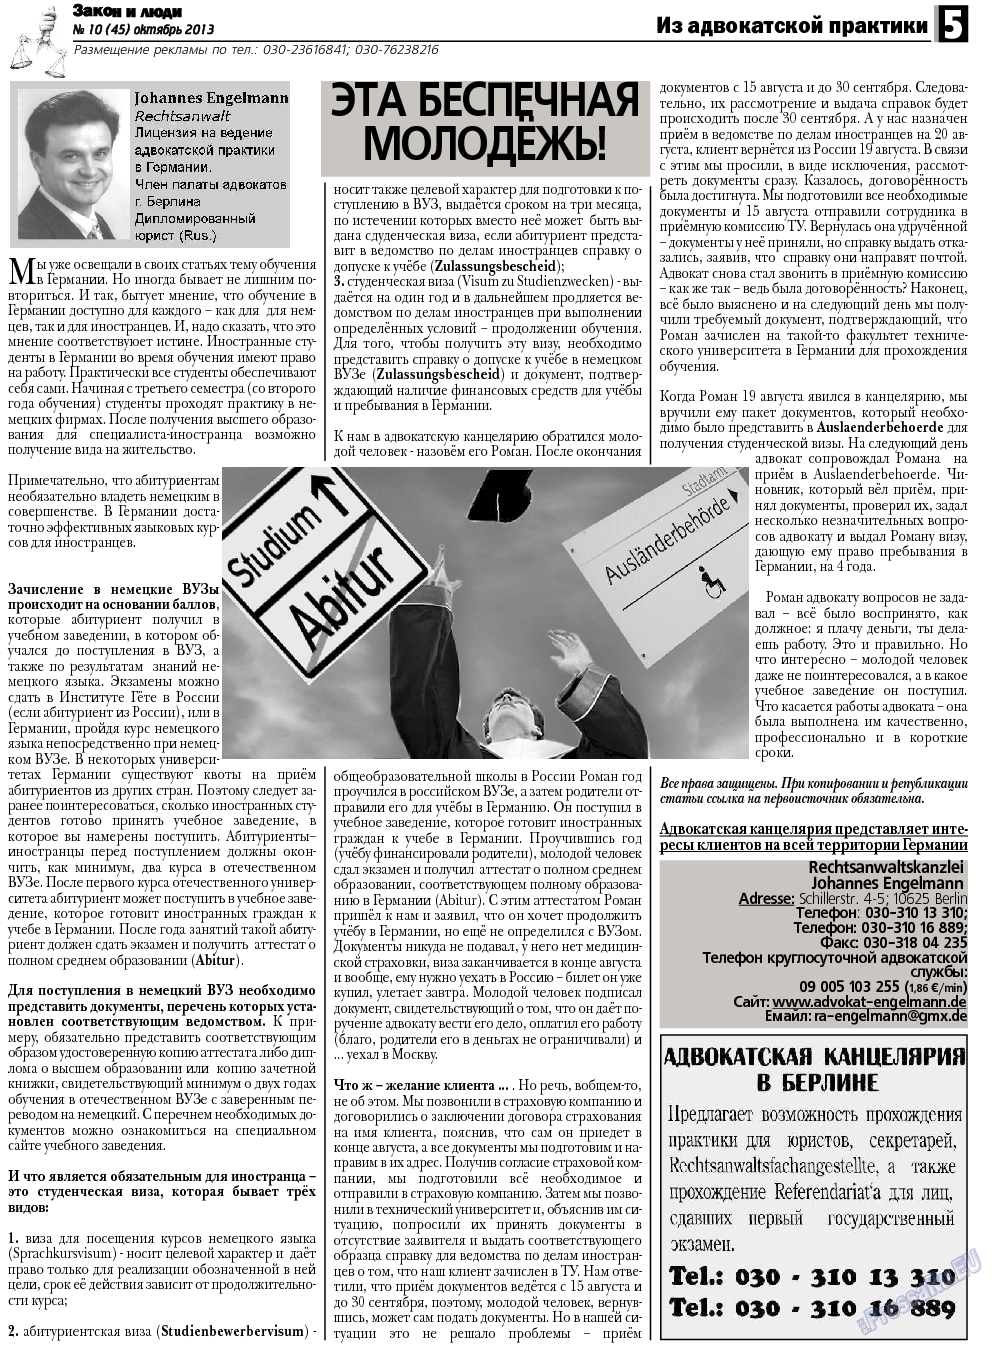 Закон и люди, газета. 2013 №10 стр.5